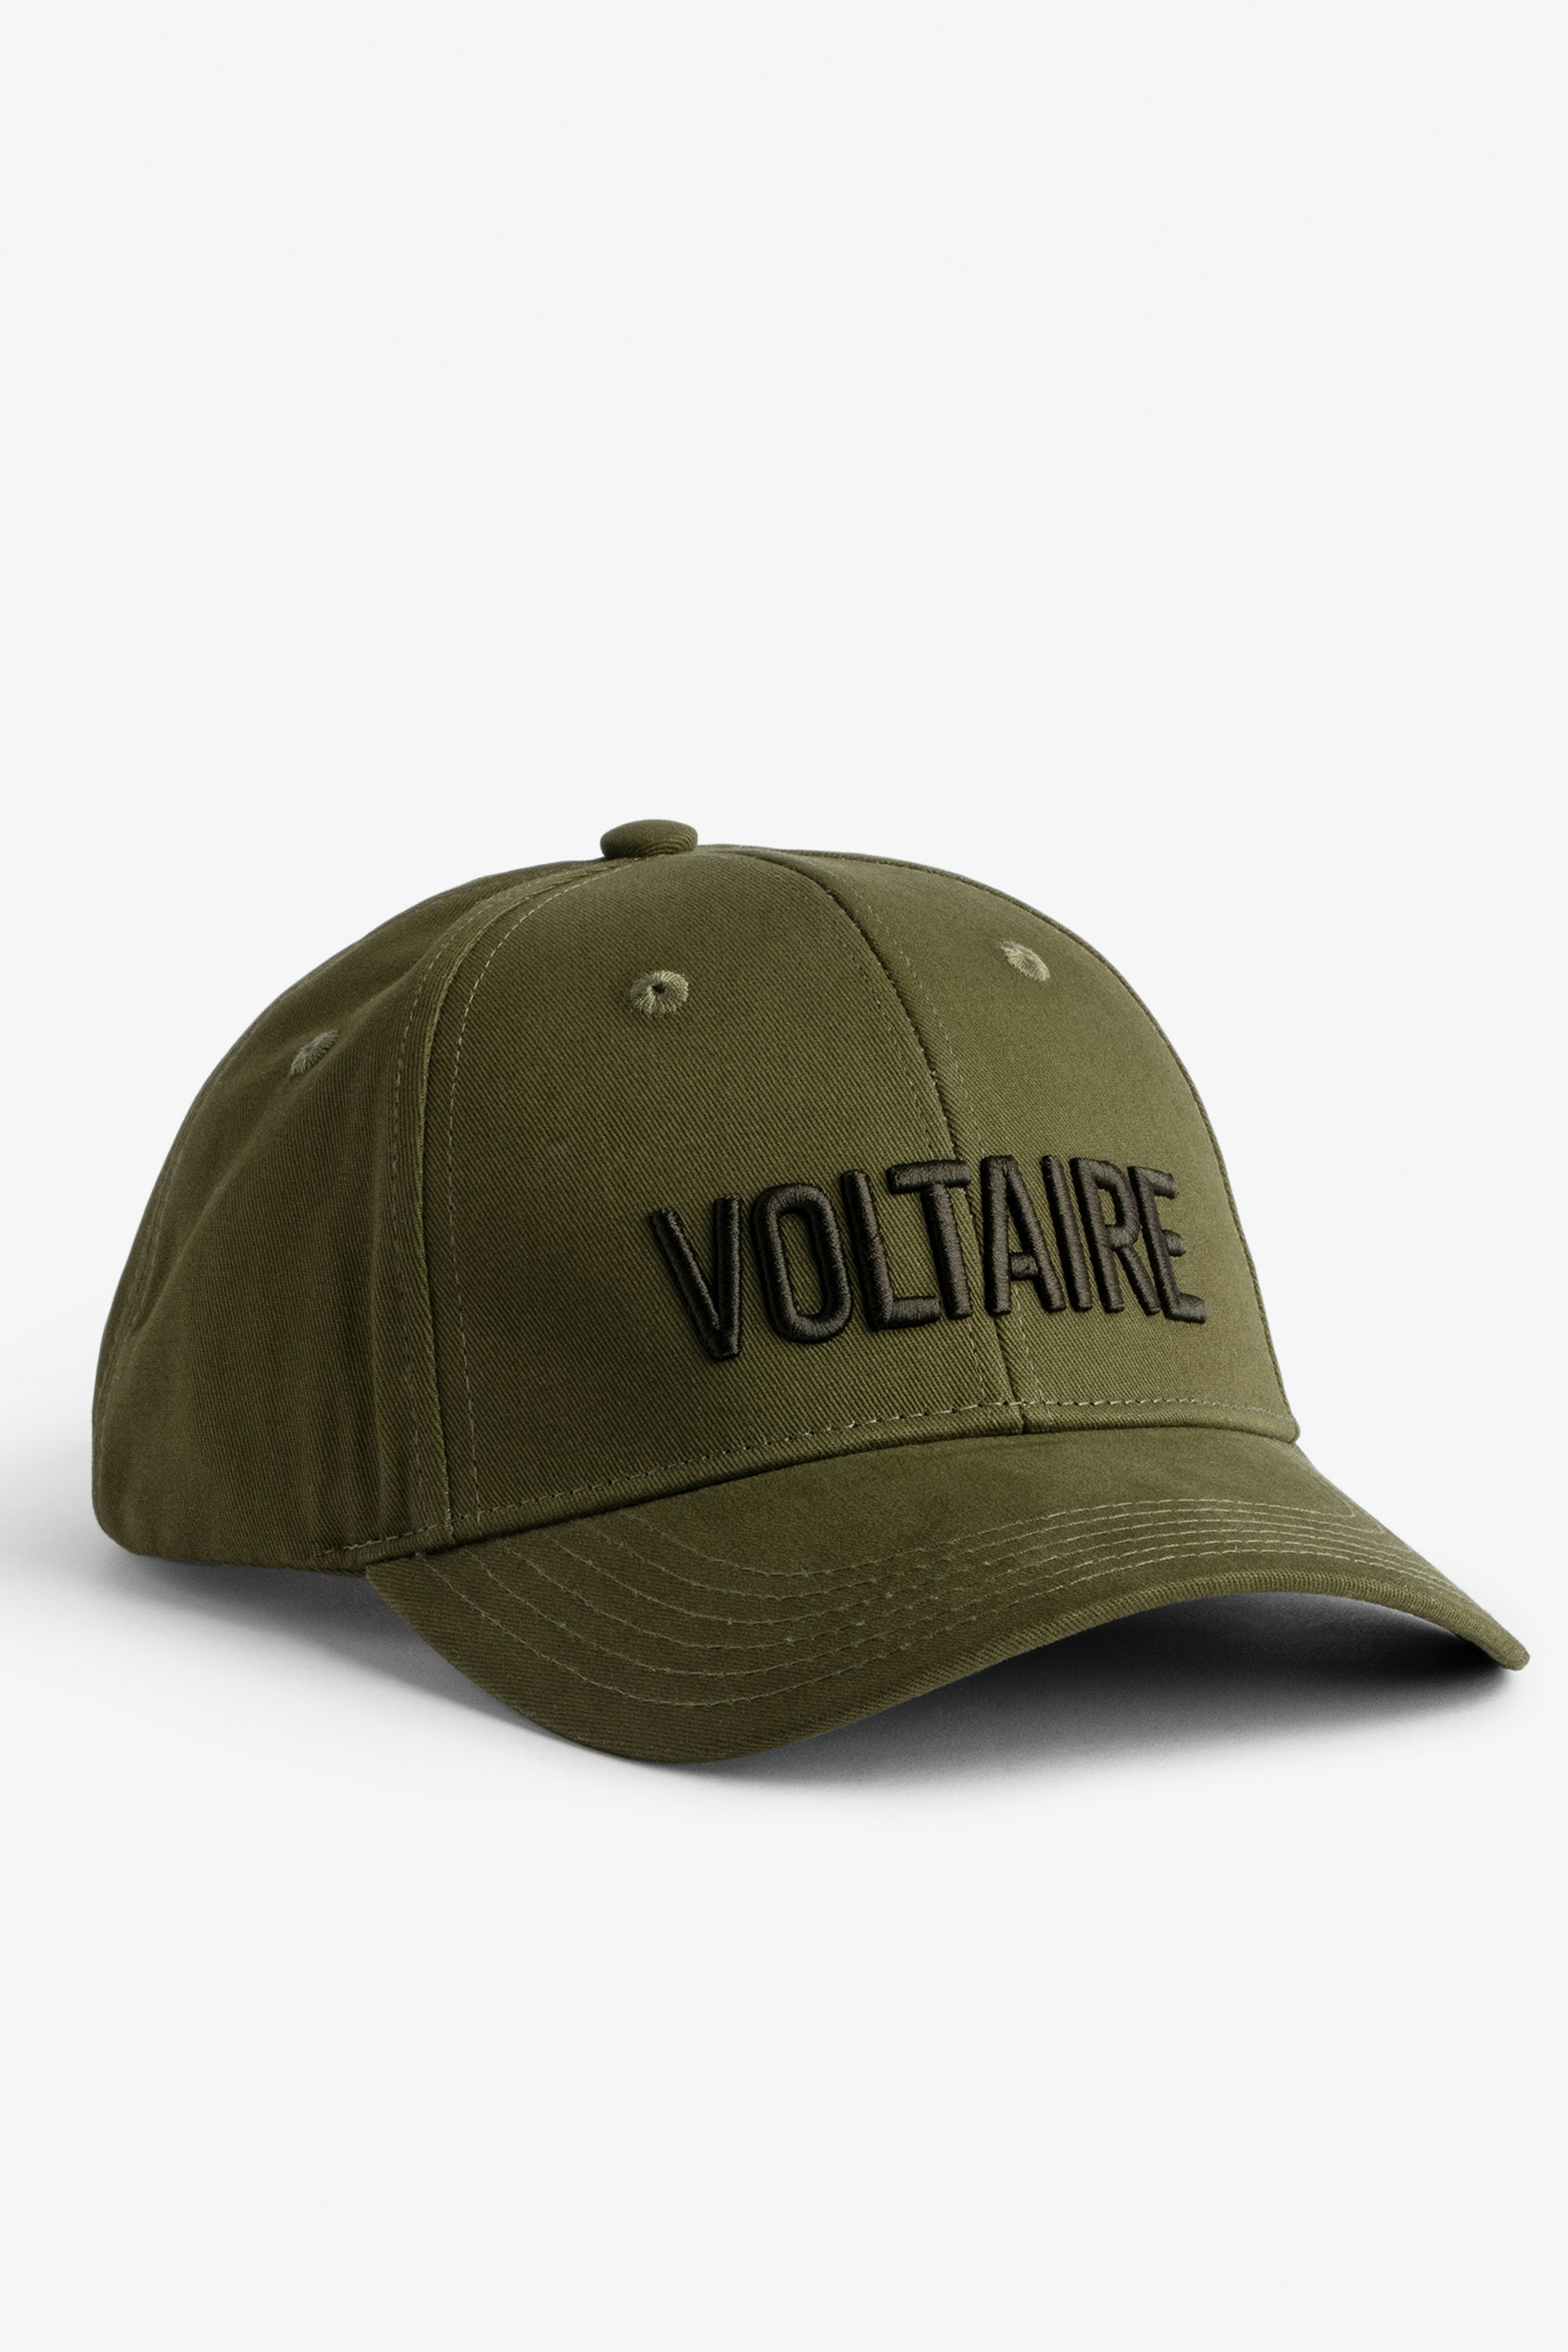 Klelia Voltaire Cap Men's khaki cotton cap embroidered “Voltaire”.